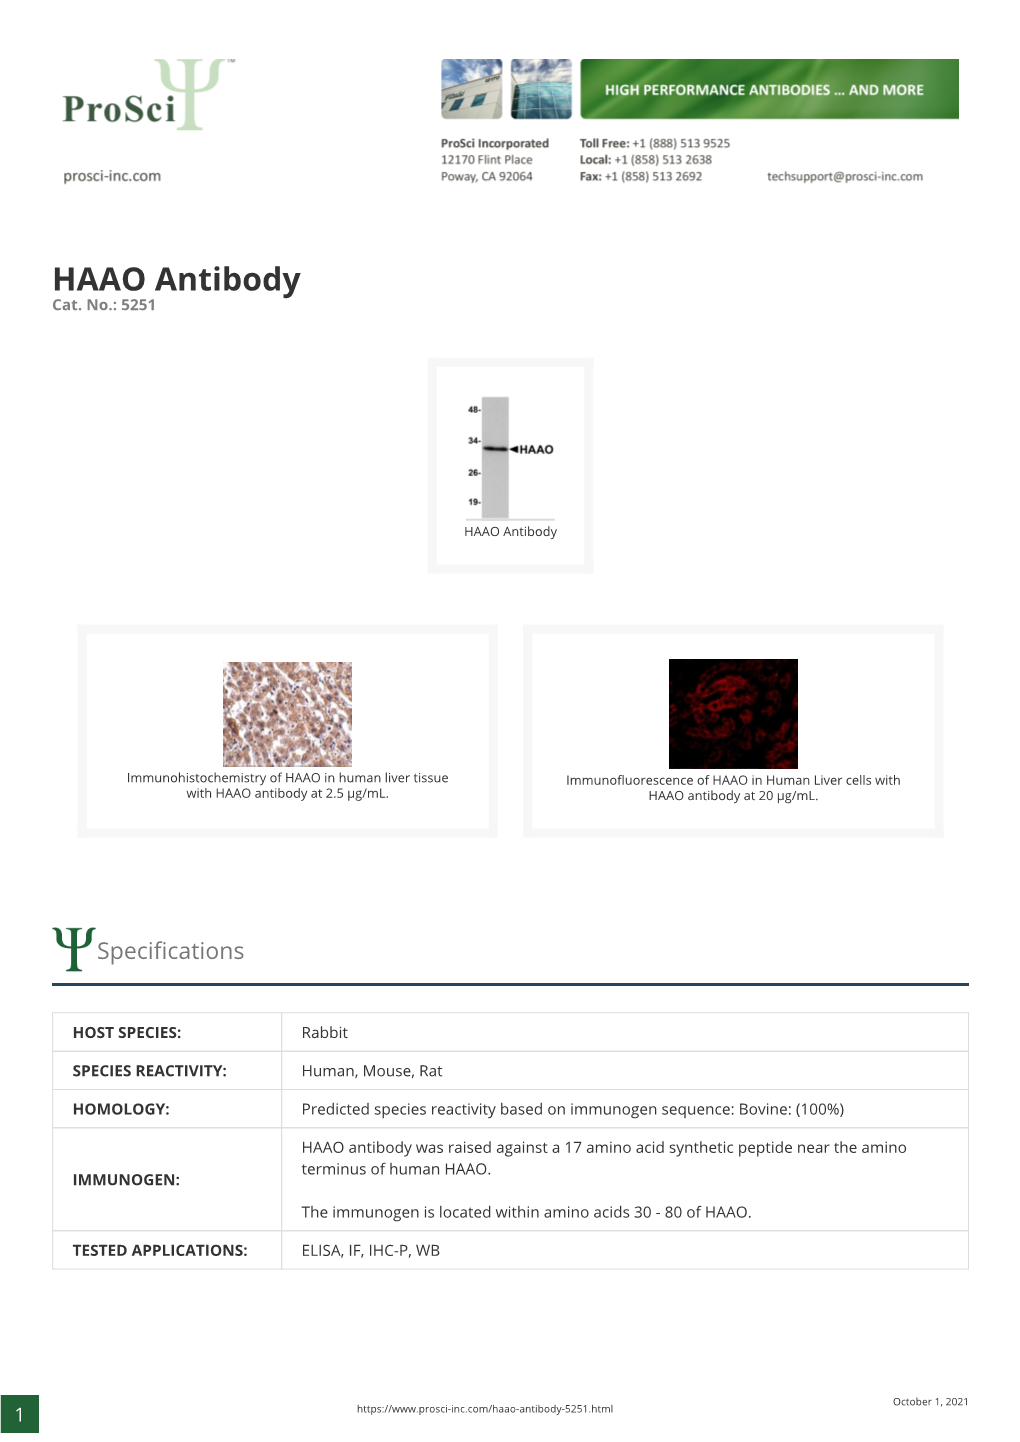 HAAO Antibody Cat